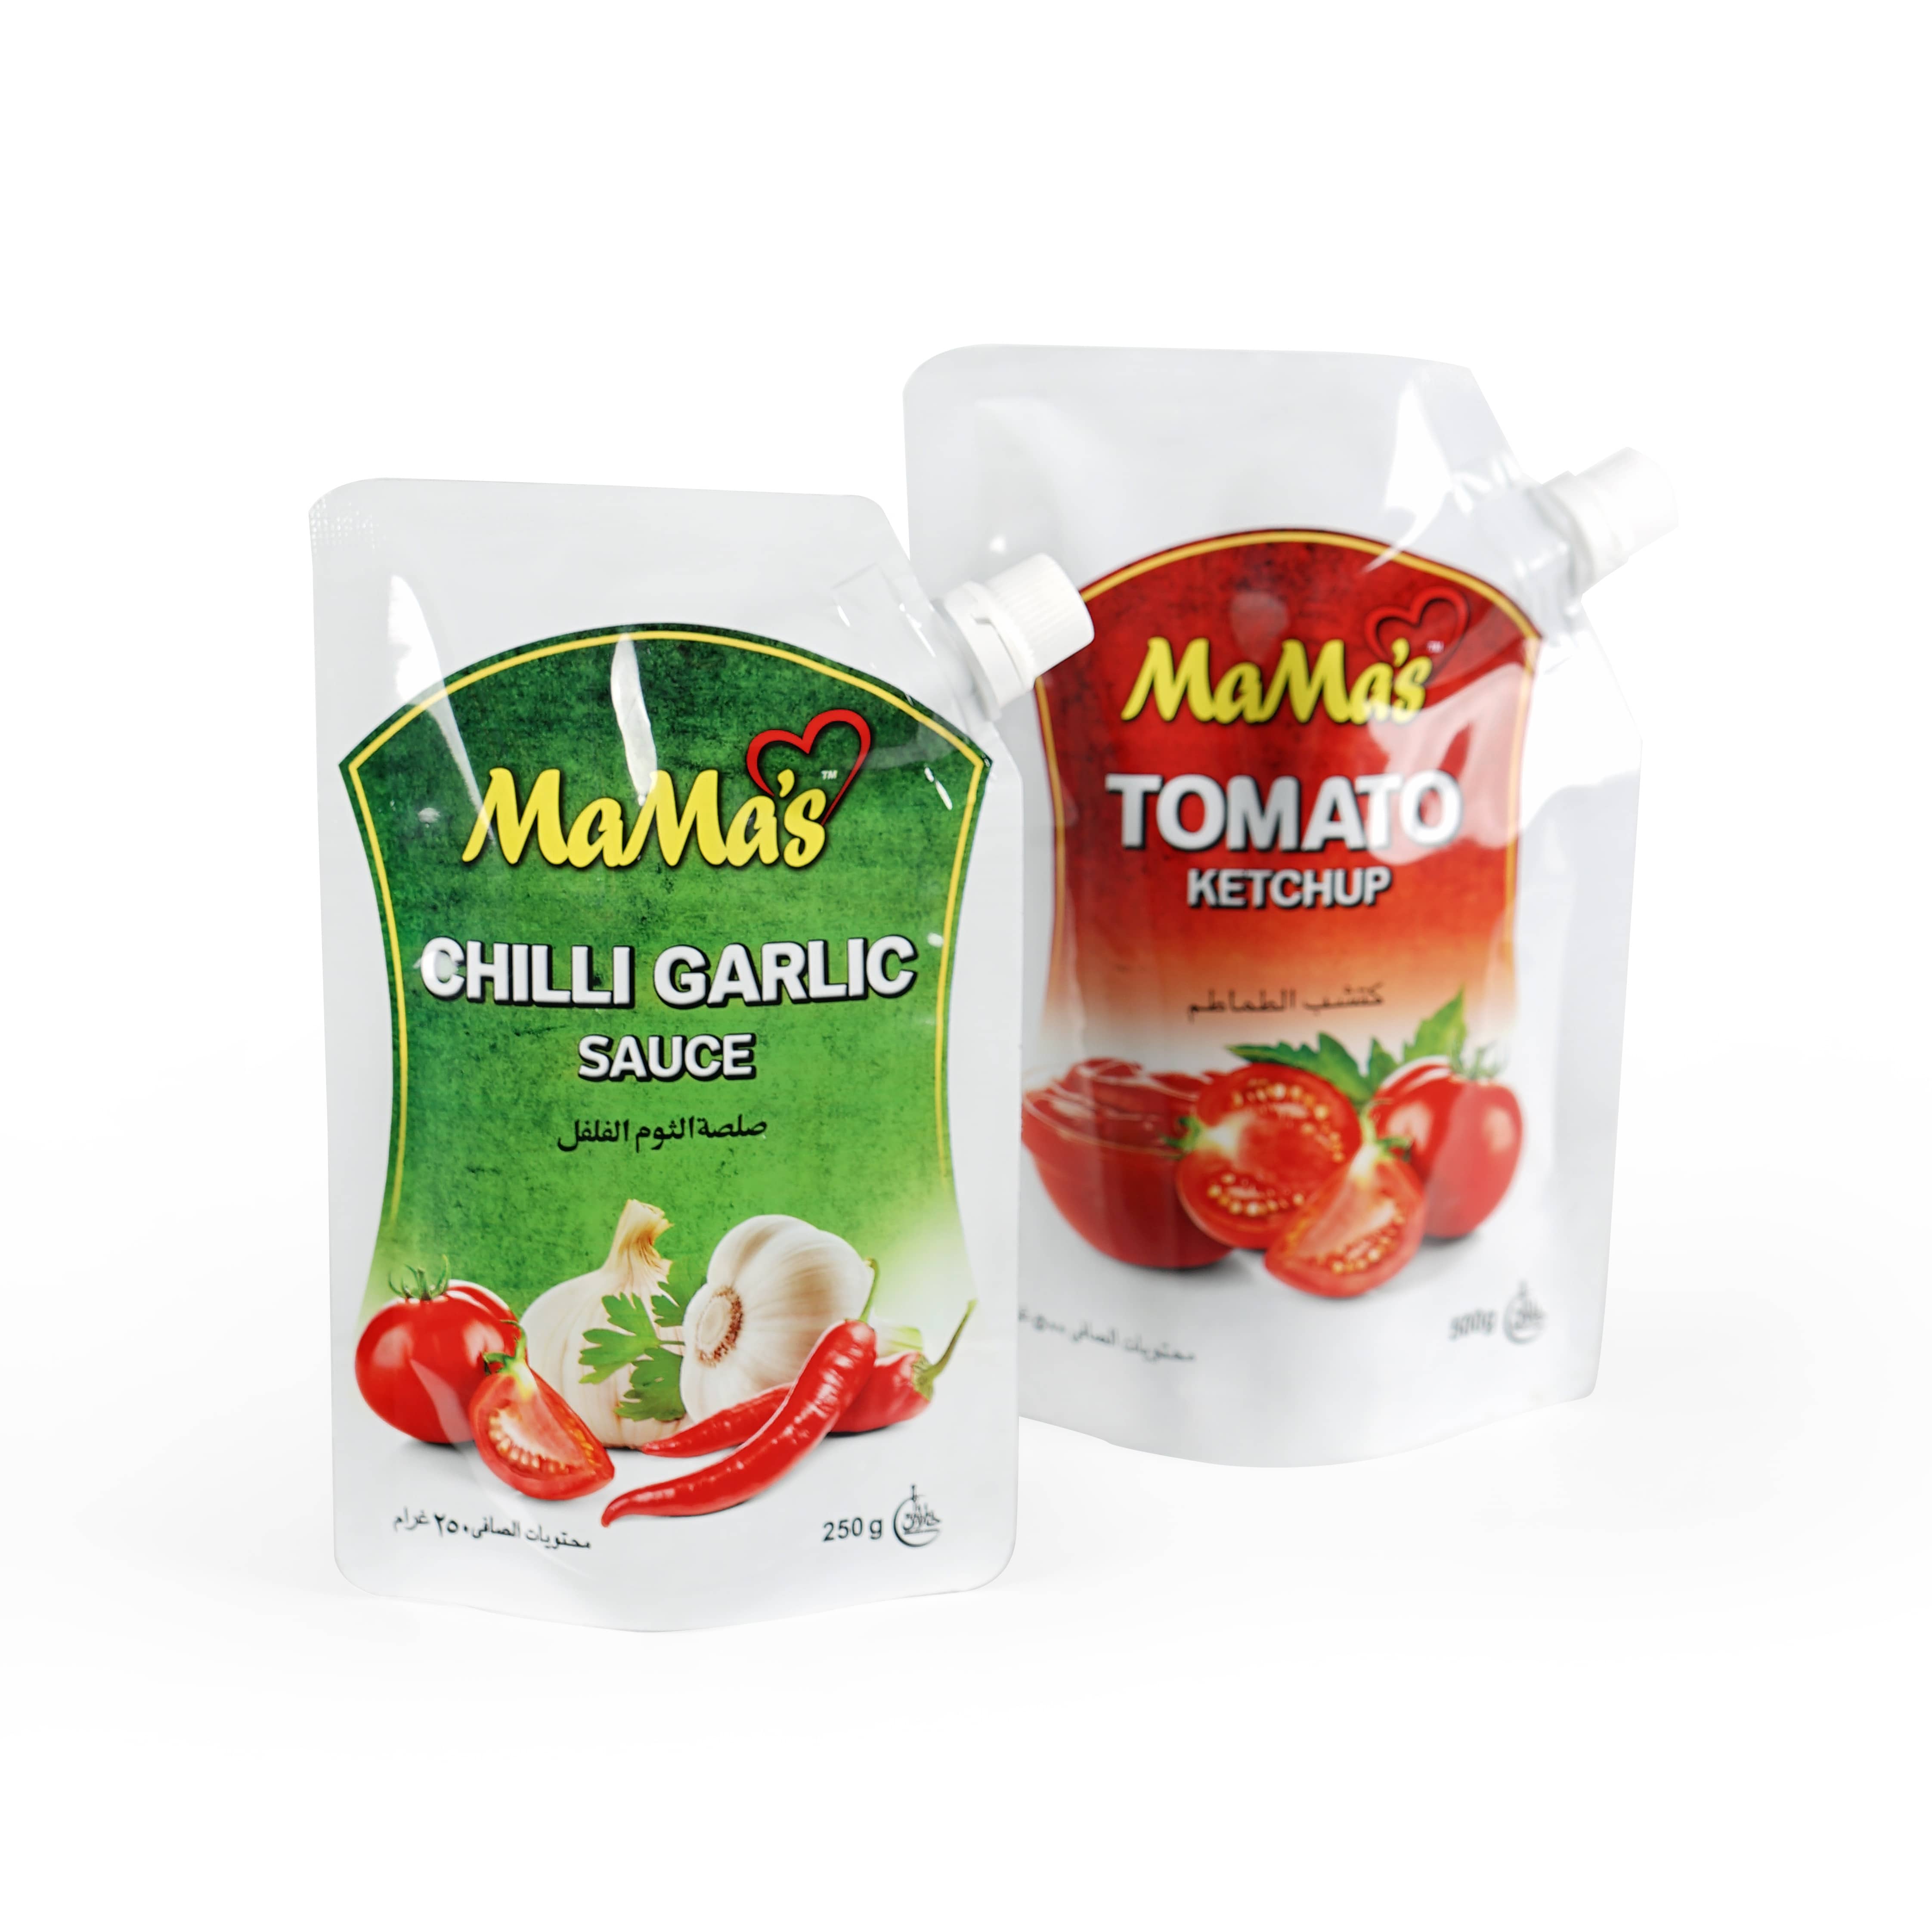 Пластмасови торбички за опаковане на лют сос от 500 g за храна Пакети за сос Knorr